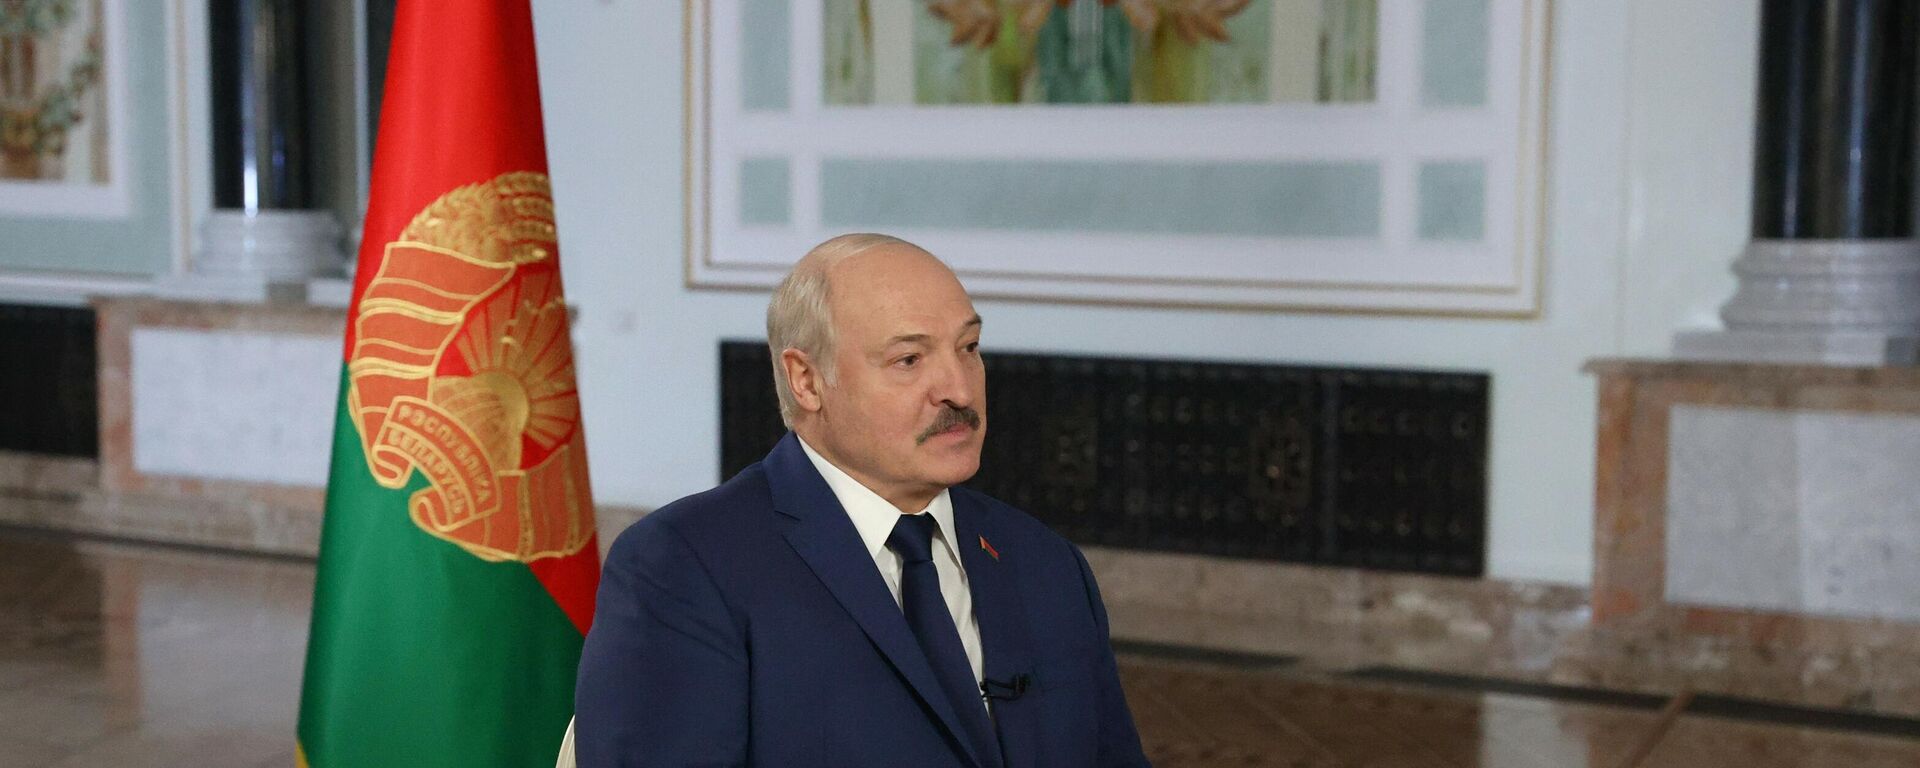 Belarus Devlet Başkanı Aleksandr Lukaşenko, Rossiya Segodnya Uluslararası Haber Ajansı Genel Müdürü Dmitriy Kiselev’e röportaj verdi. - Sputnik Türkiye, 1920, 28.12.2021